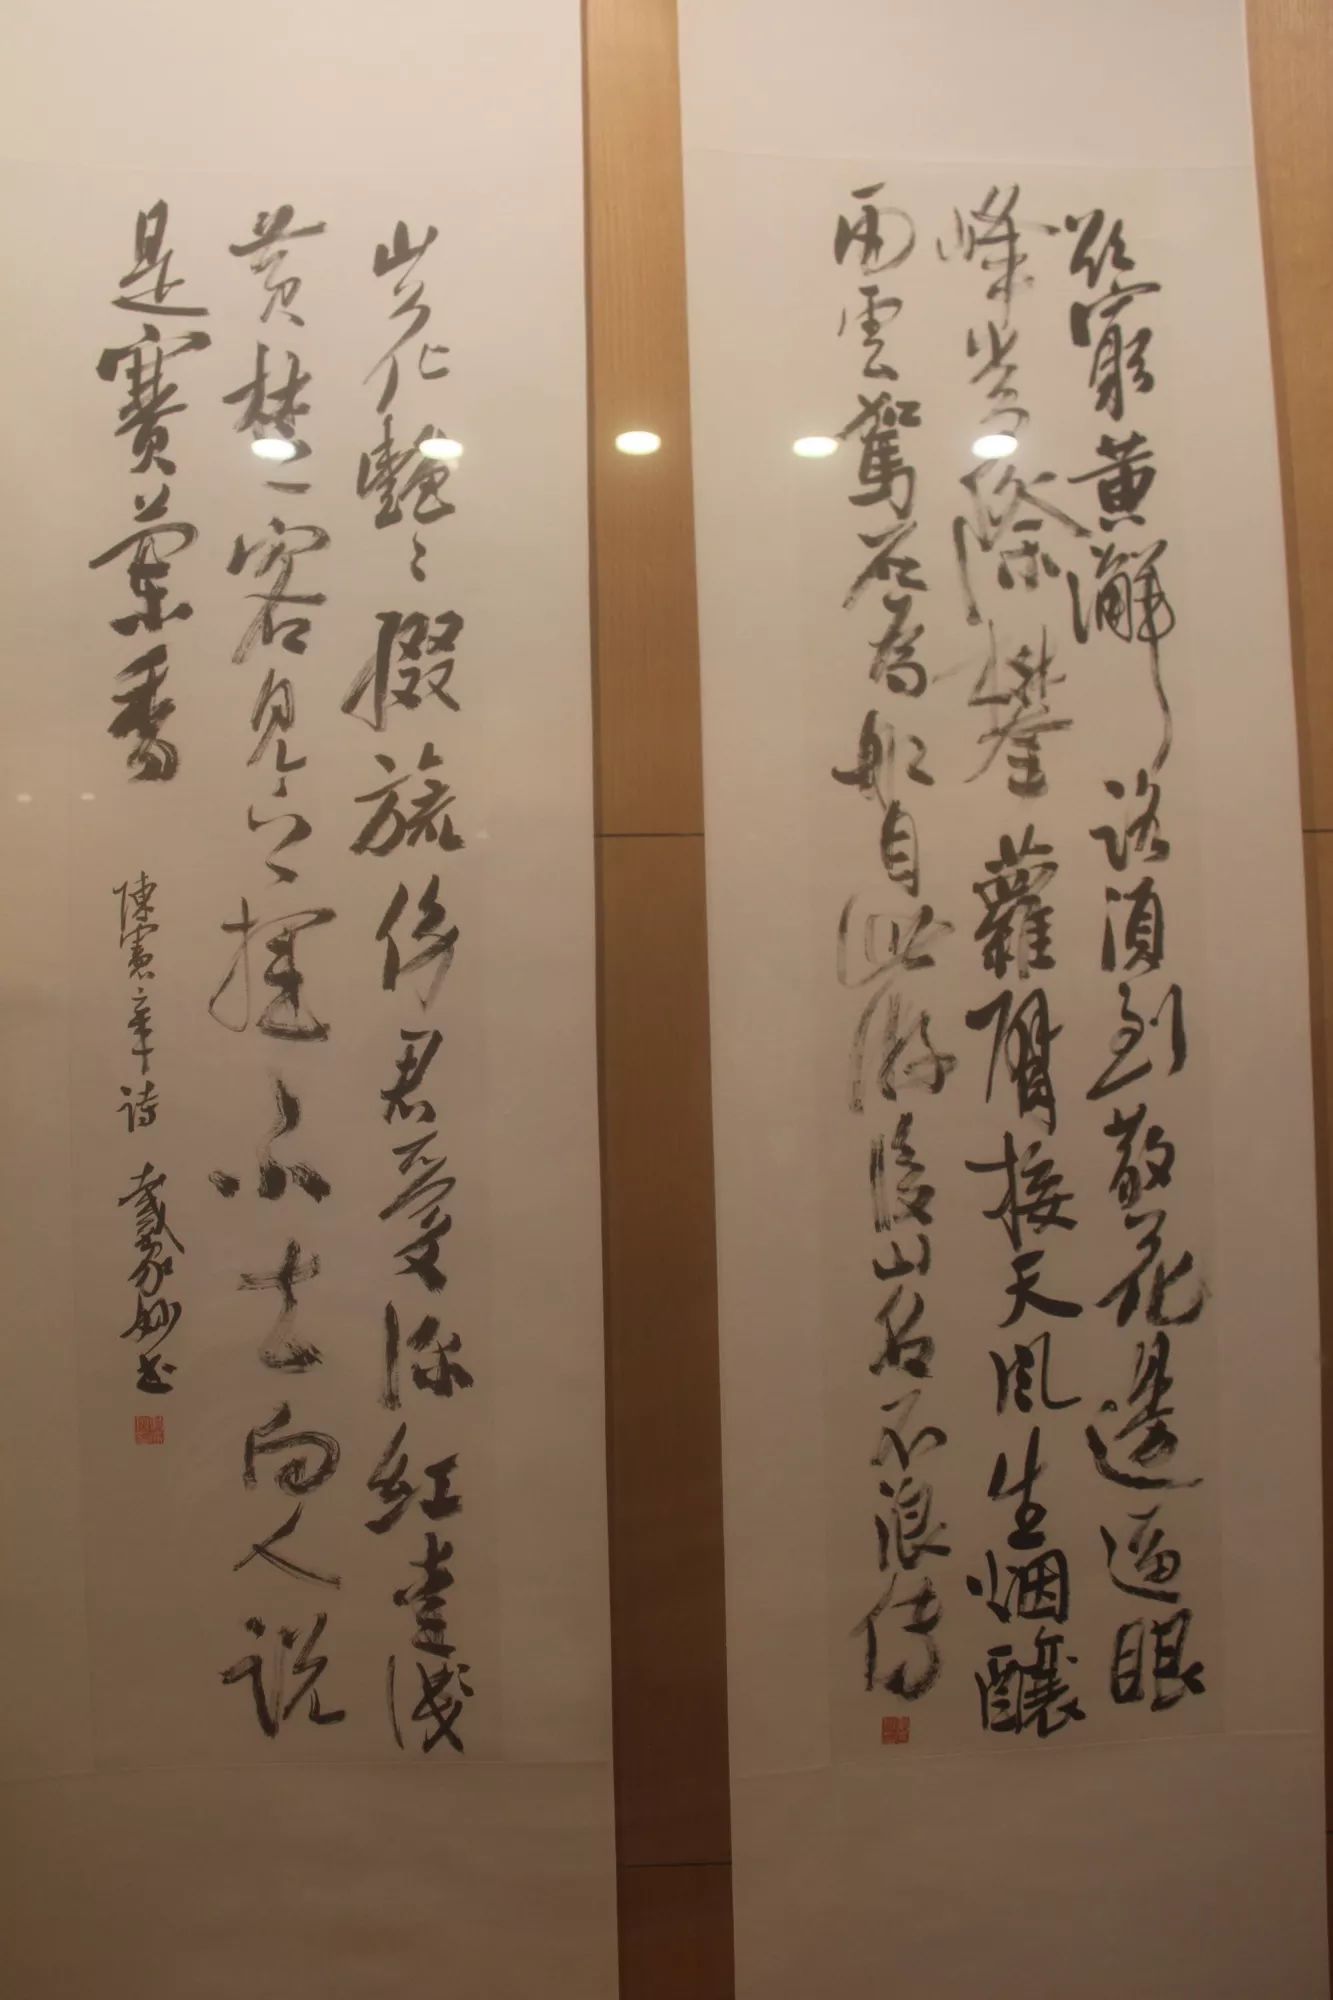 【车行温州】不负初心——戴家妙书法篆刻展在温州博物馆开幕